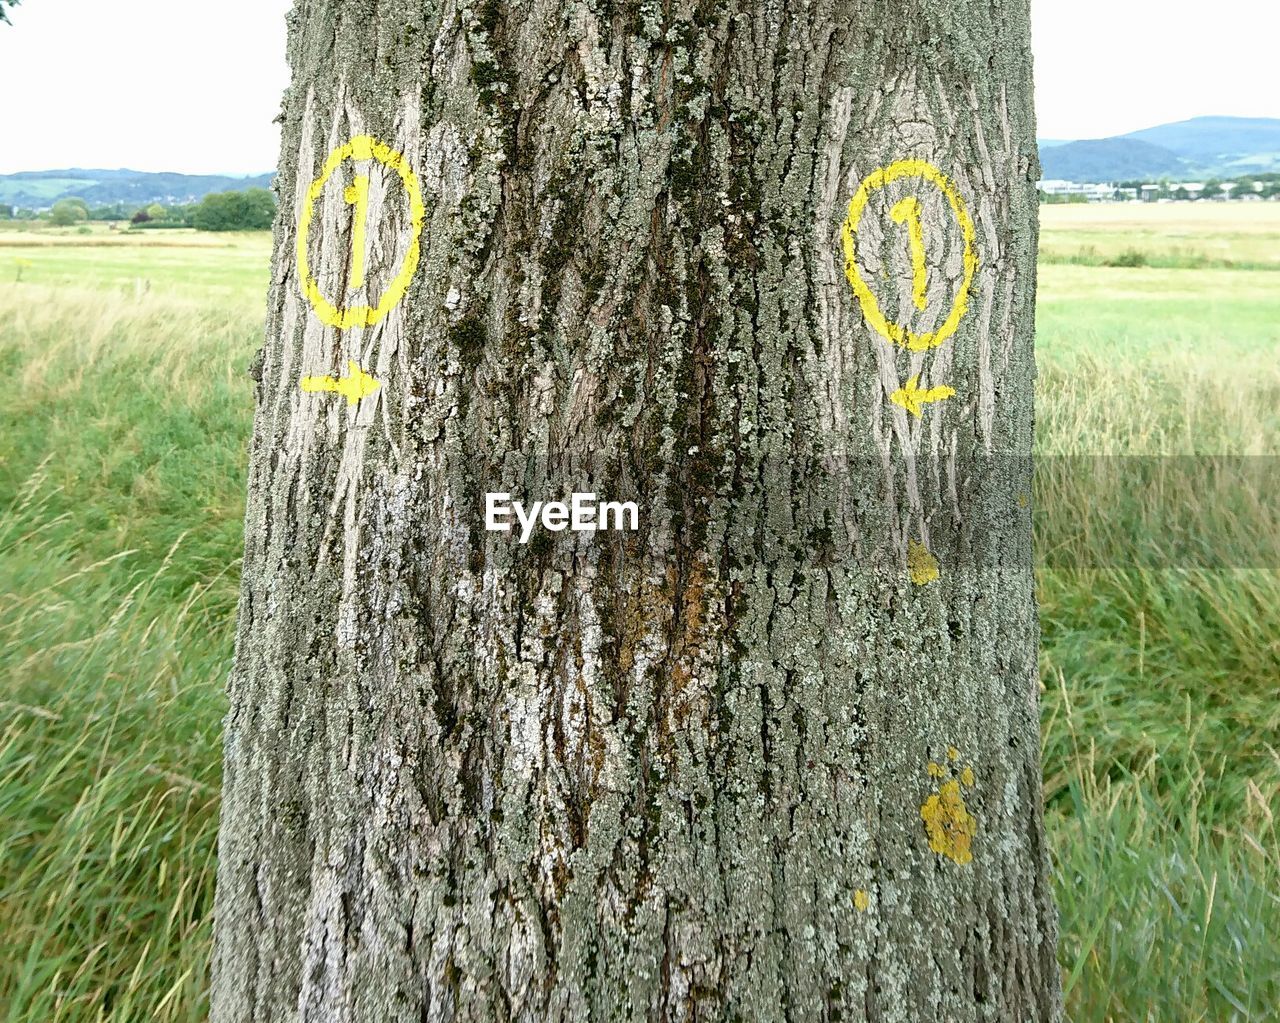 Markings on tree trunk on grassy field